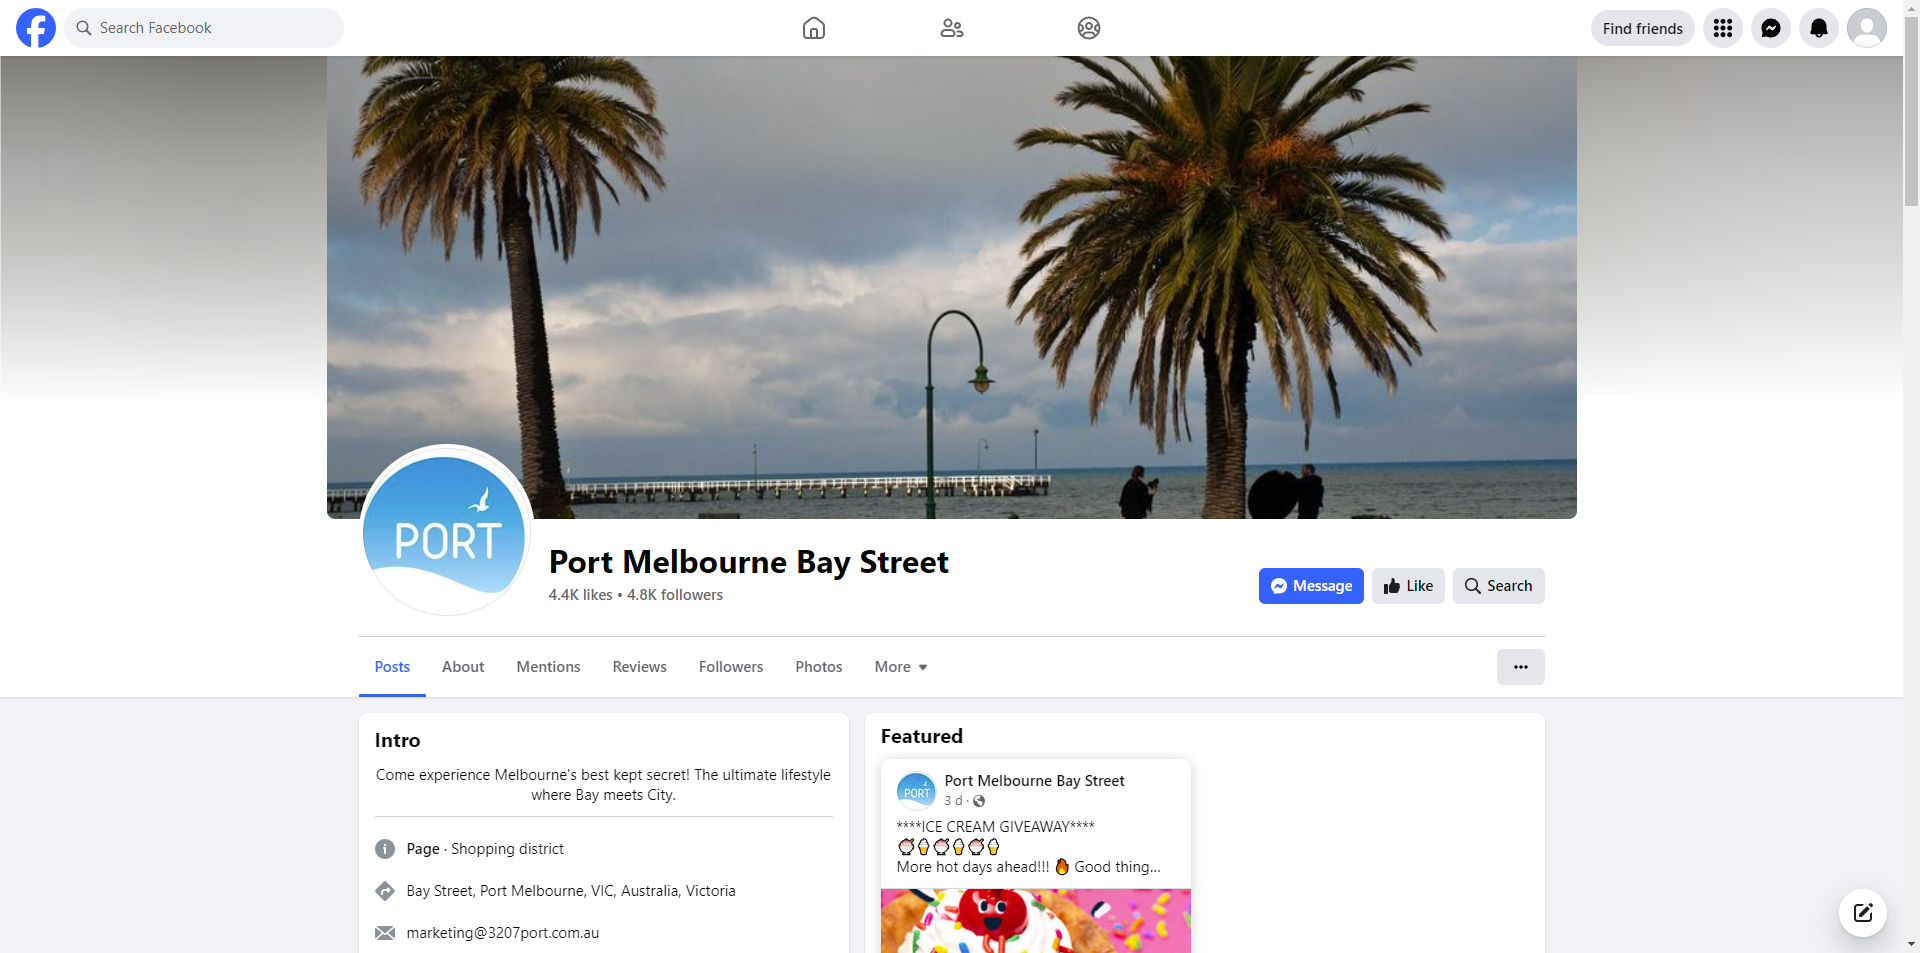 Port Melbourne Bay Street